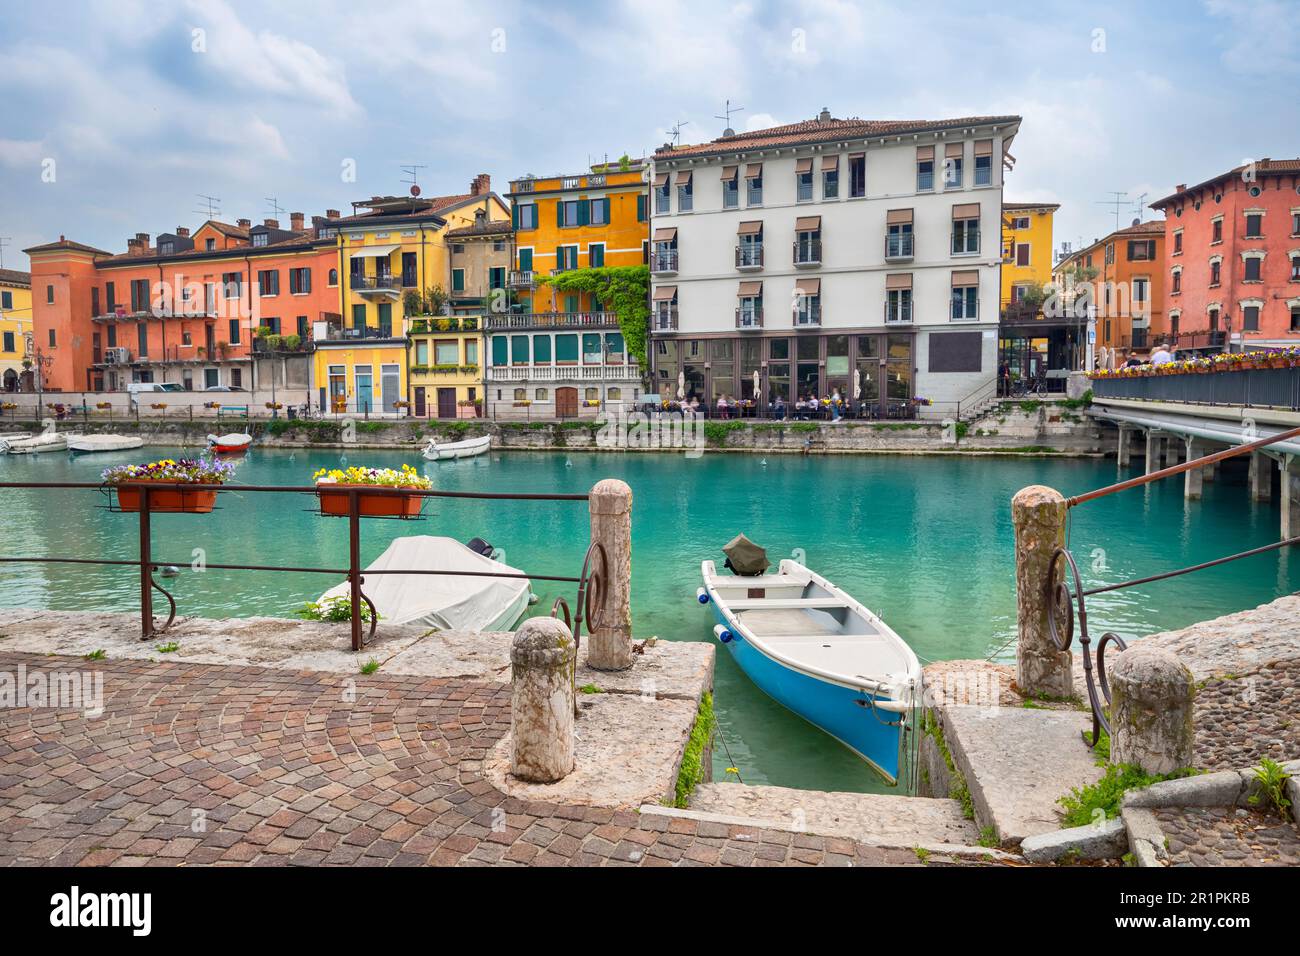 Peschiera del Garda, Italia - Pequeña ciudad histórica fortificada situada en el lago de Garda Foto de stock